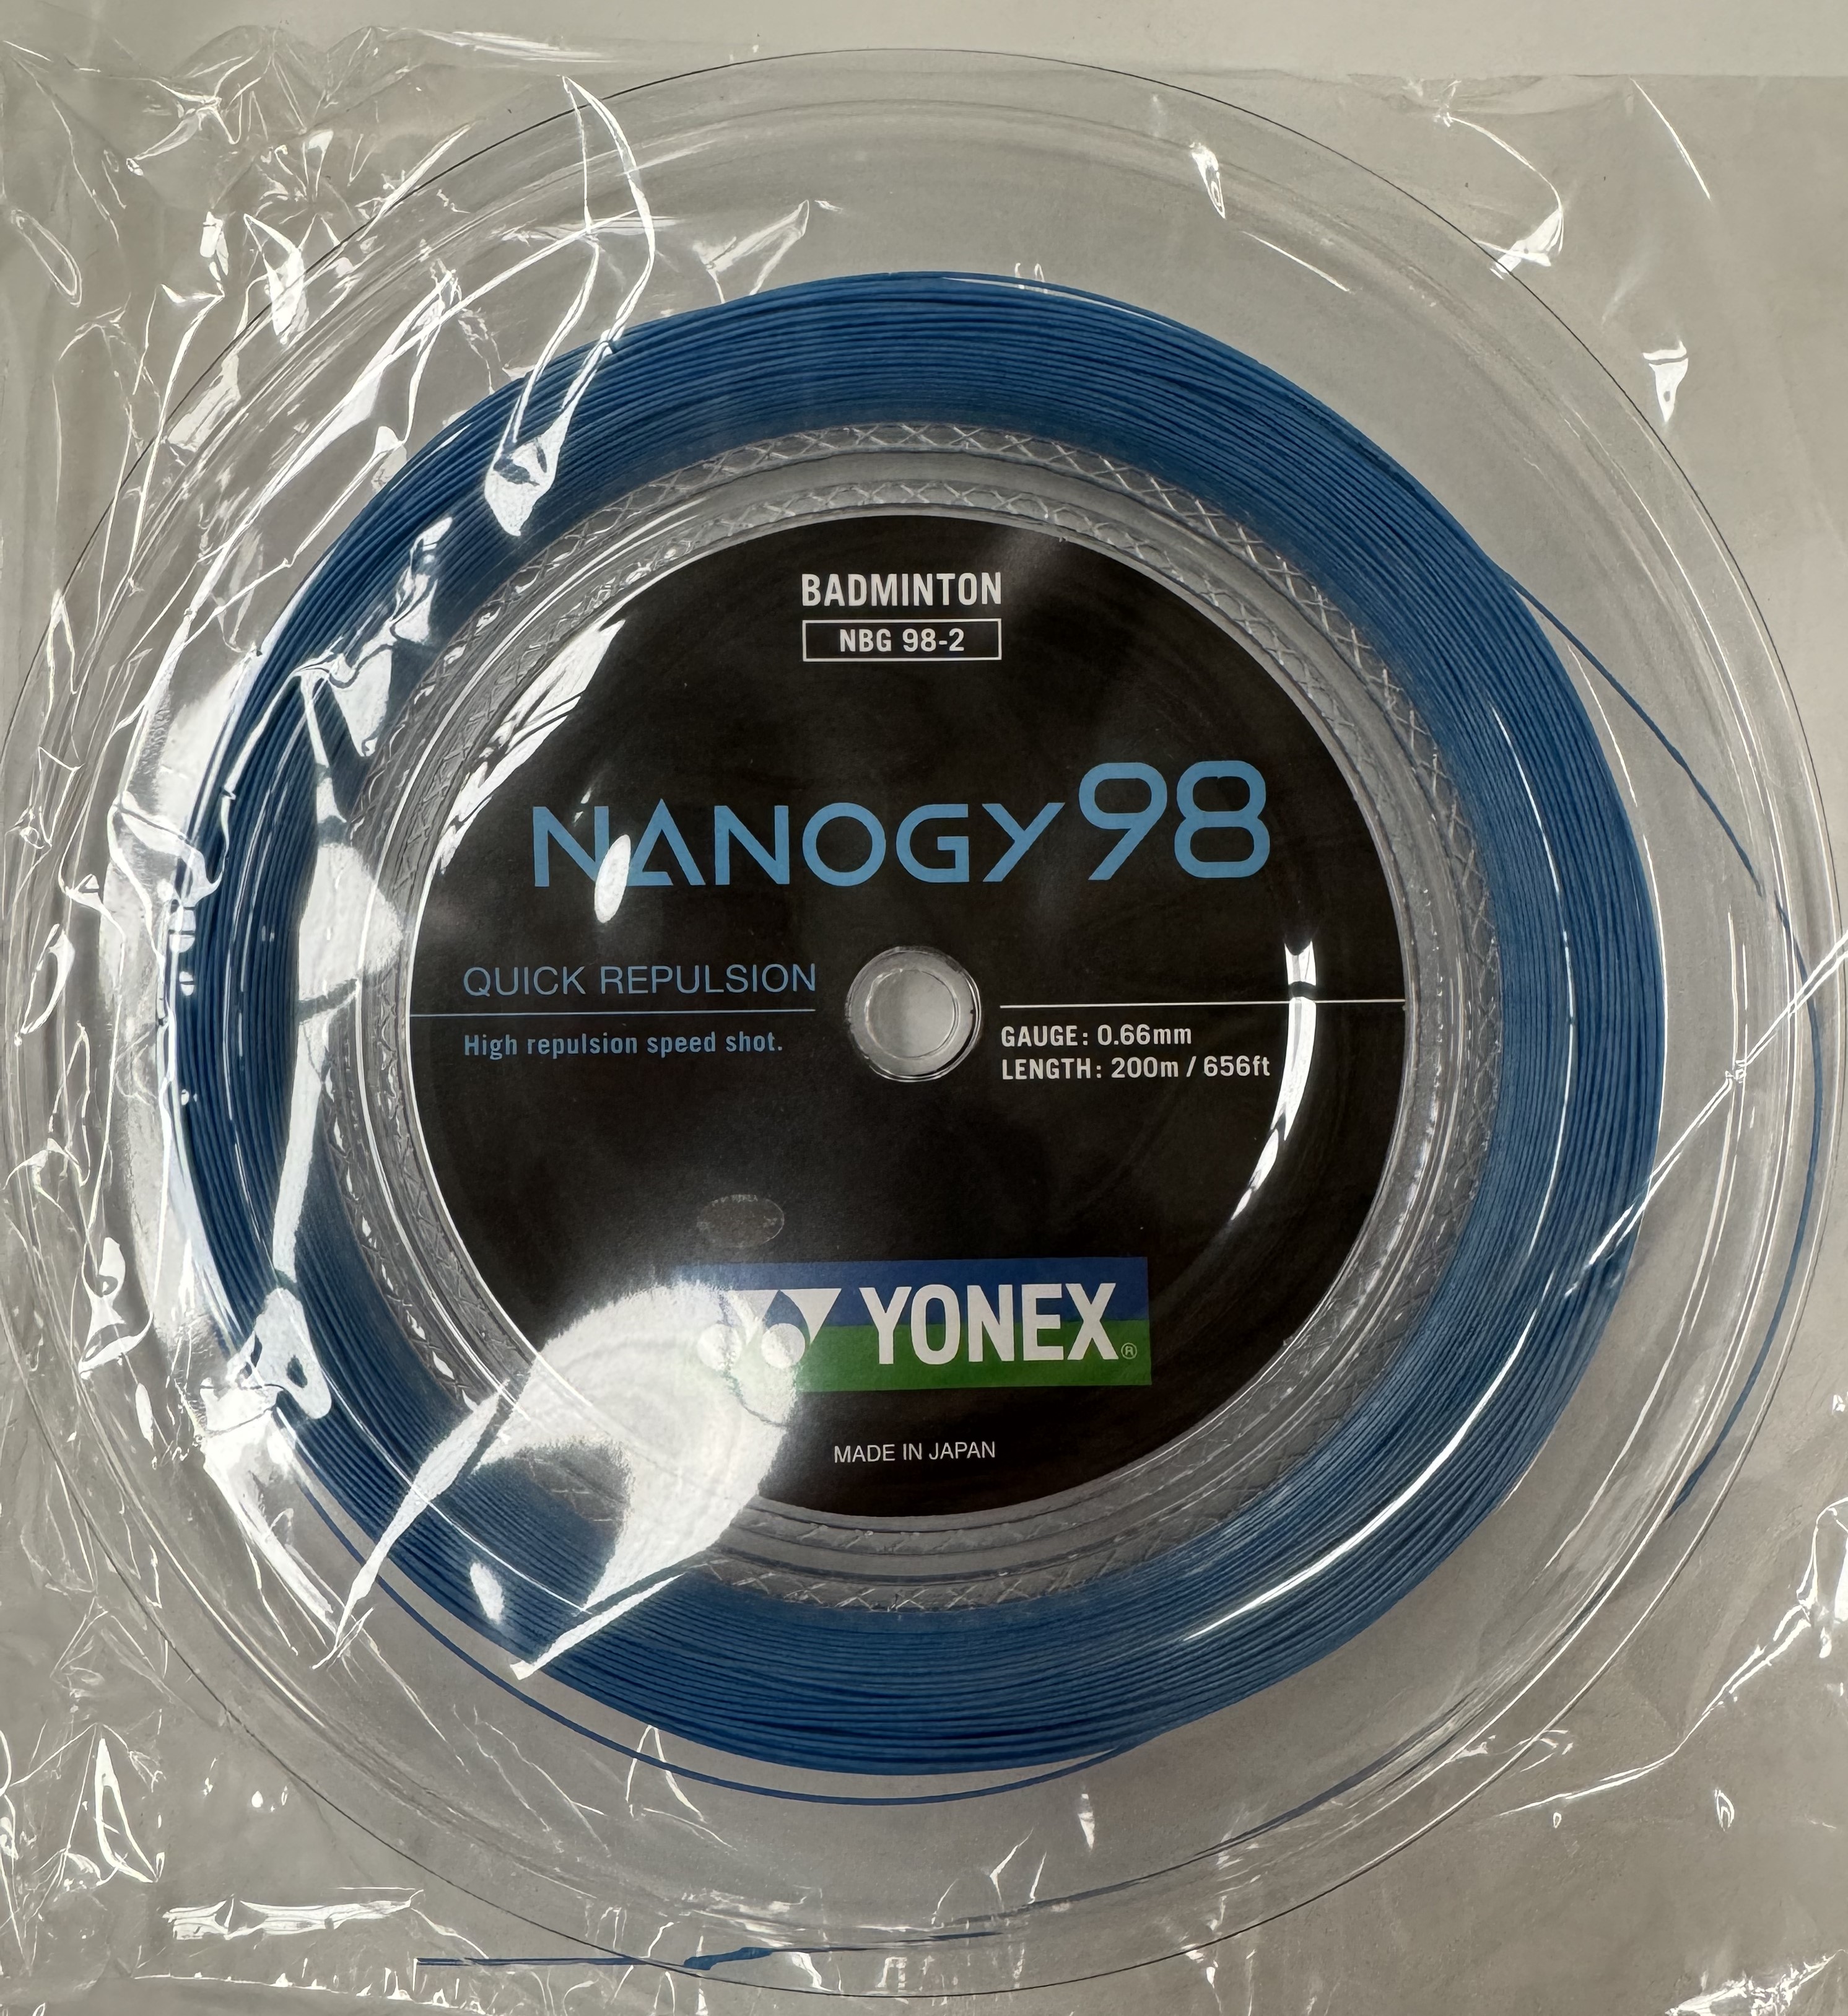 YONEX Nanogy 98 NBG98 Badminton Coil String, 200 m, Blue